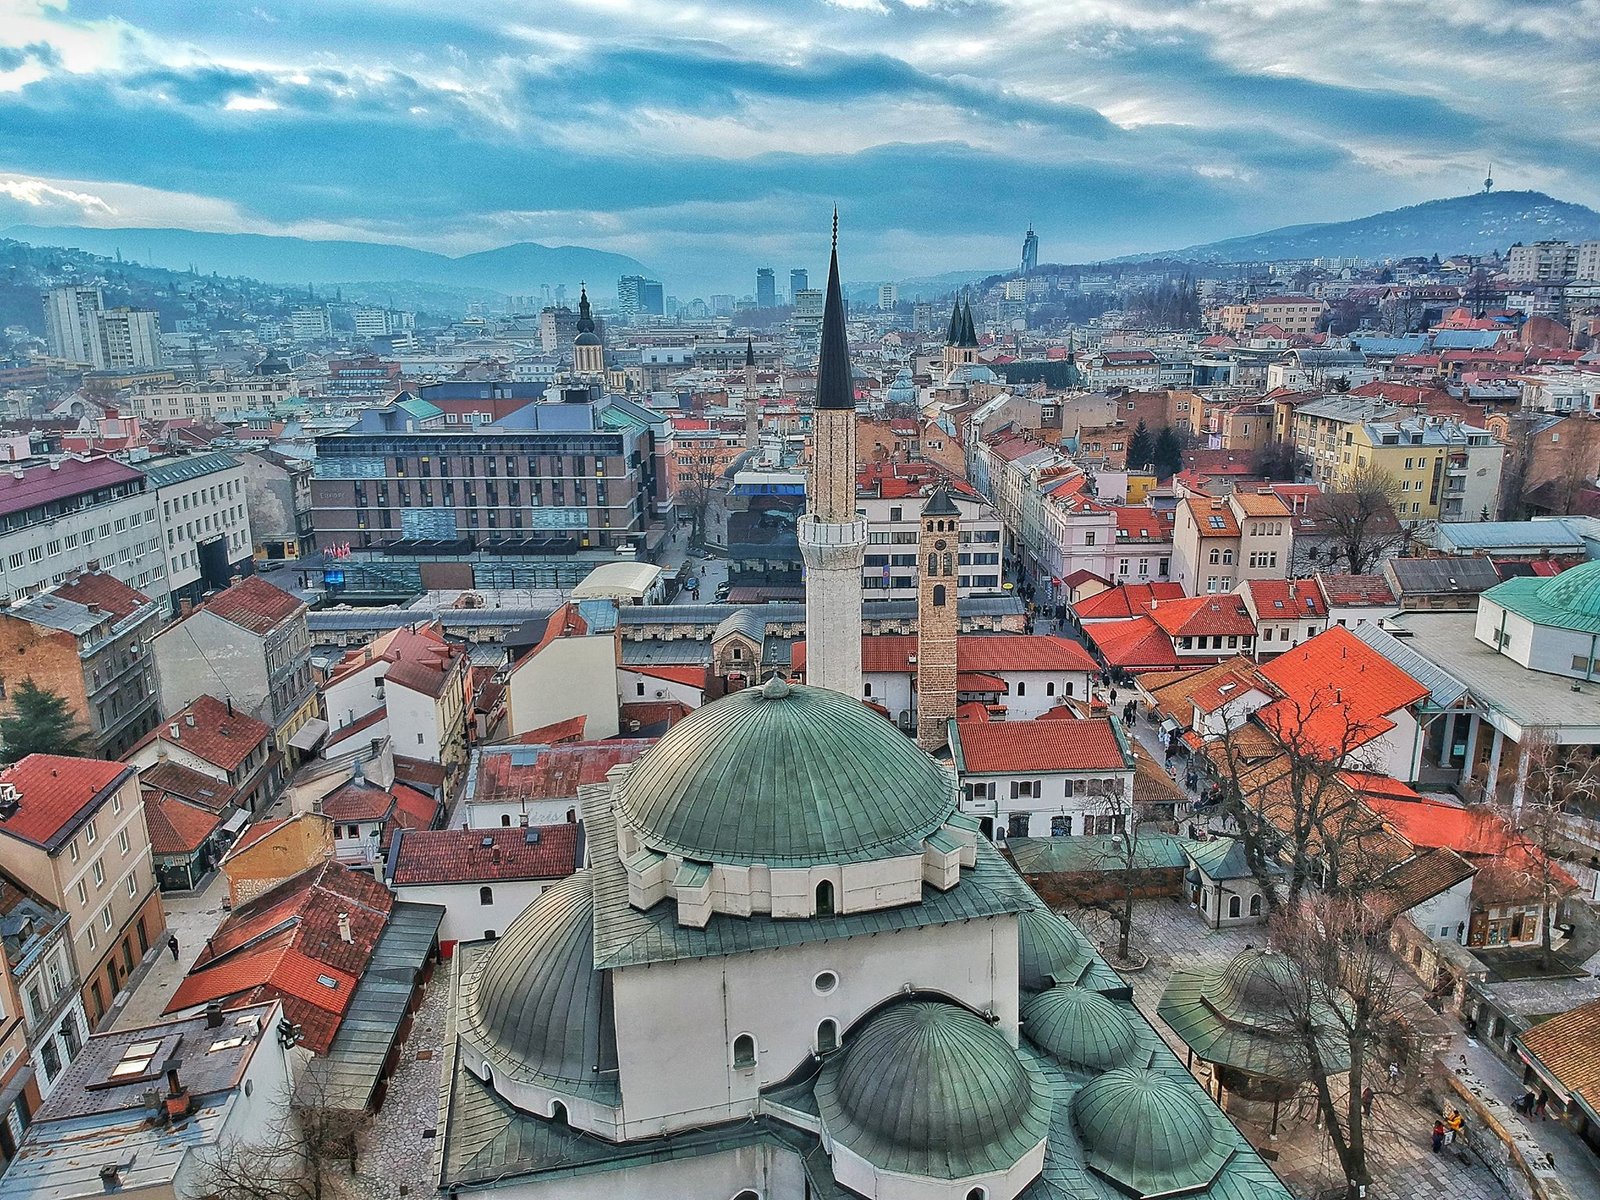 Sarajevo cultures